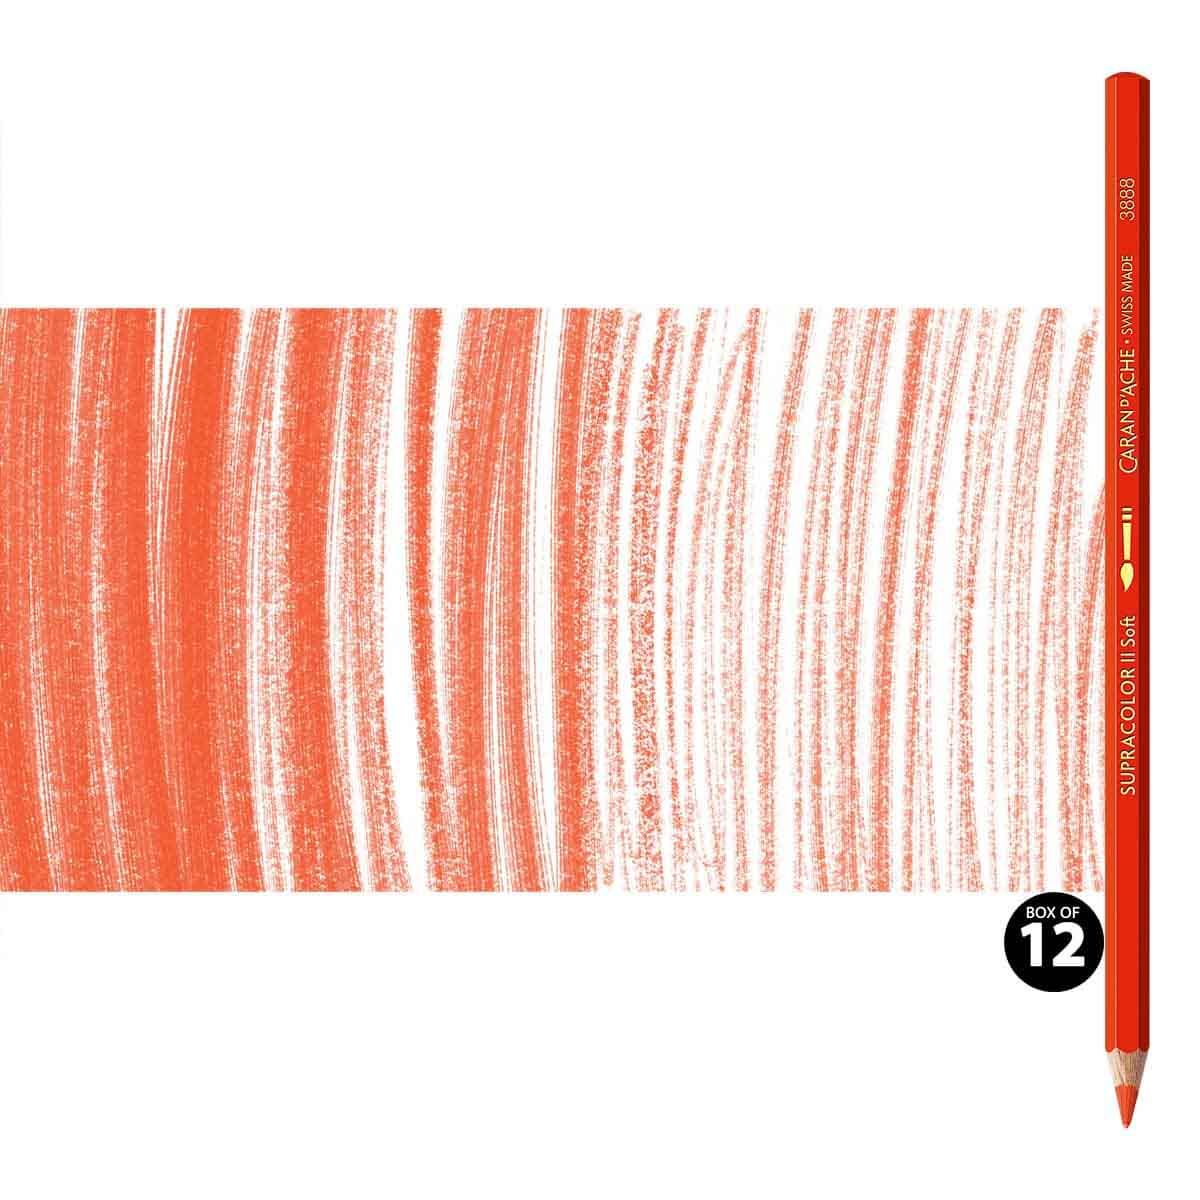 Supracolor II Watercolor Pencils Box of 12 No. 060 - Vermilion